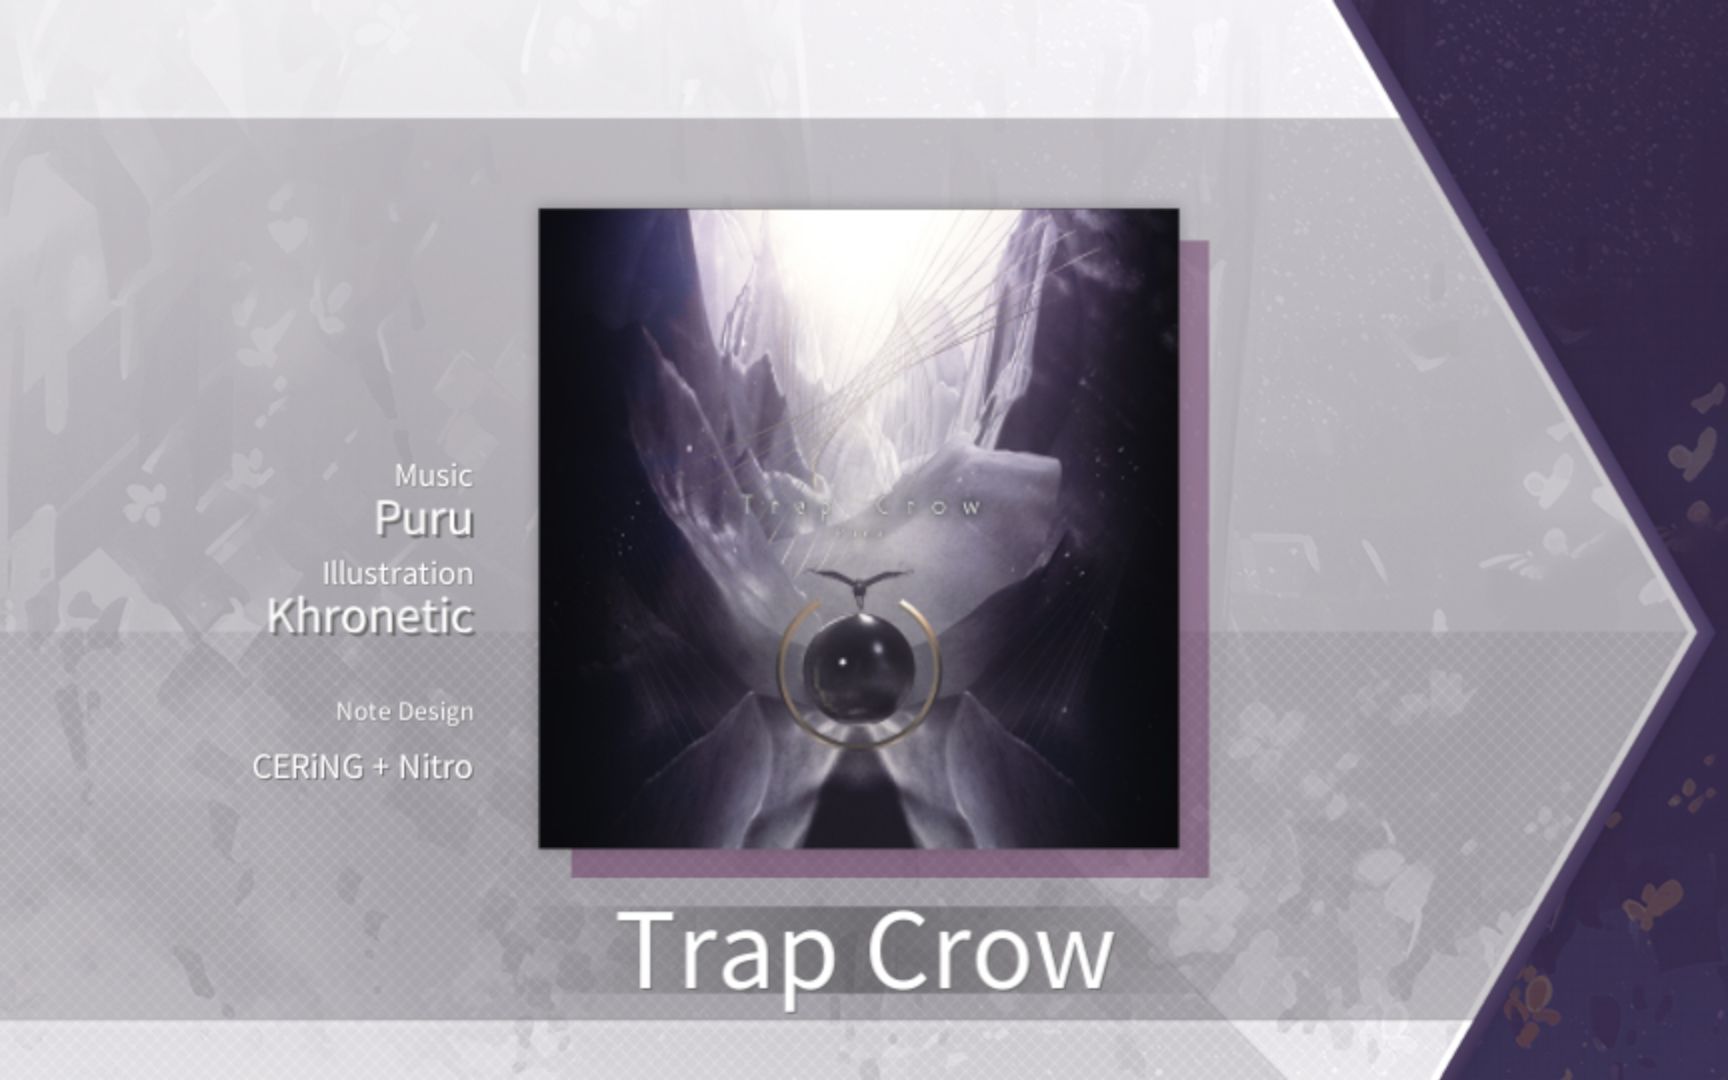 【Arcaea谱面保管室】Trap Crow [FTR 9+] 谱面确认